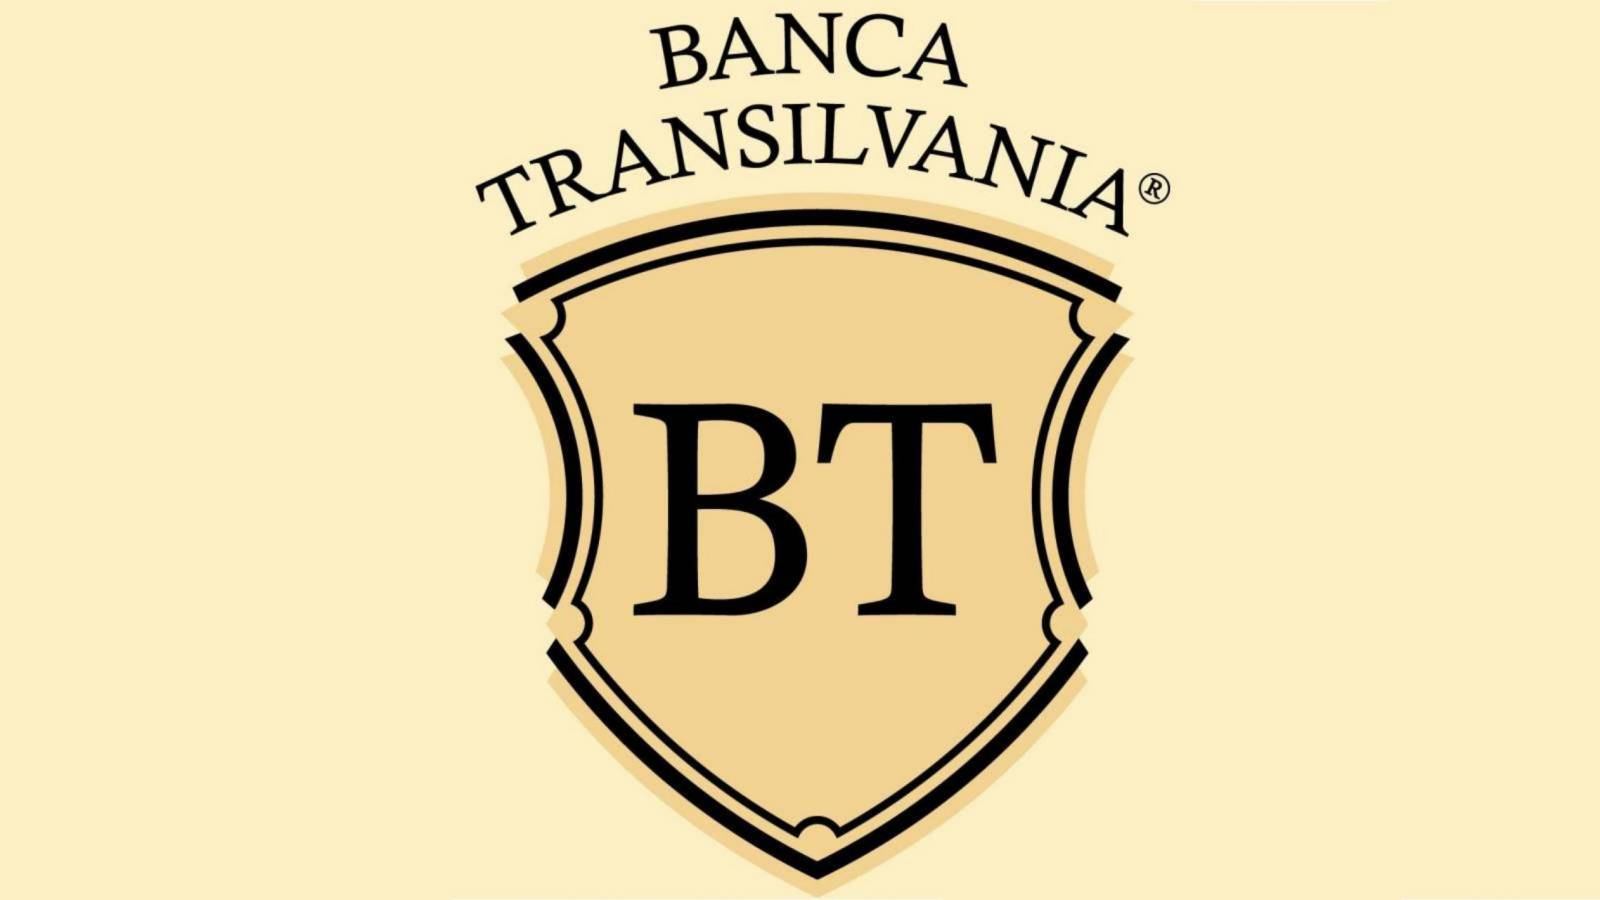 BANCA Transilvania Ny Brådskande VARNING utfärdad till rumänska kunder